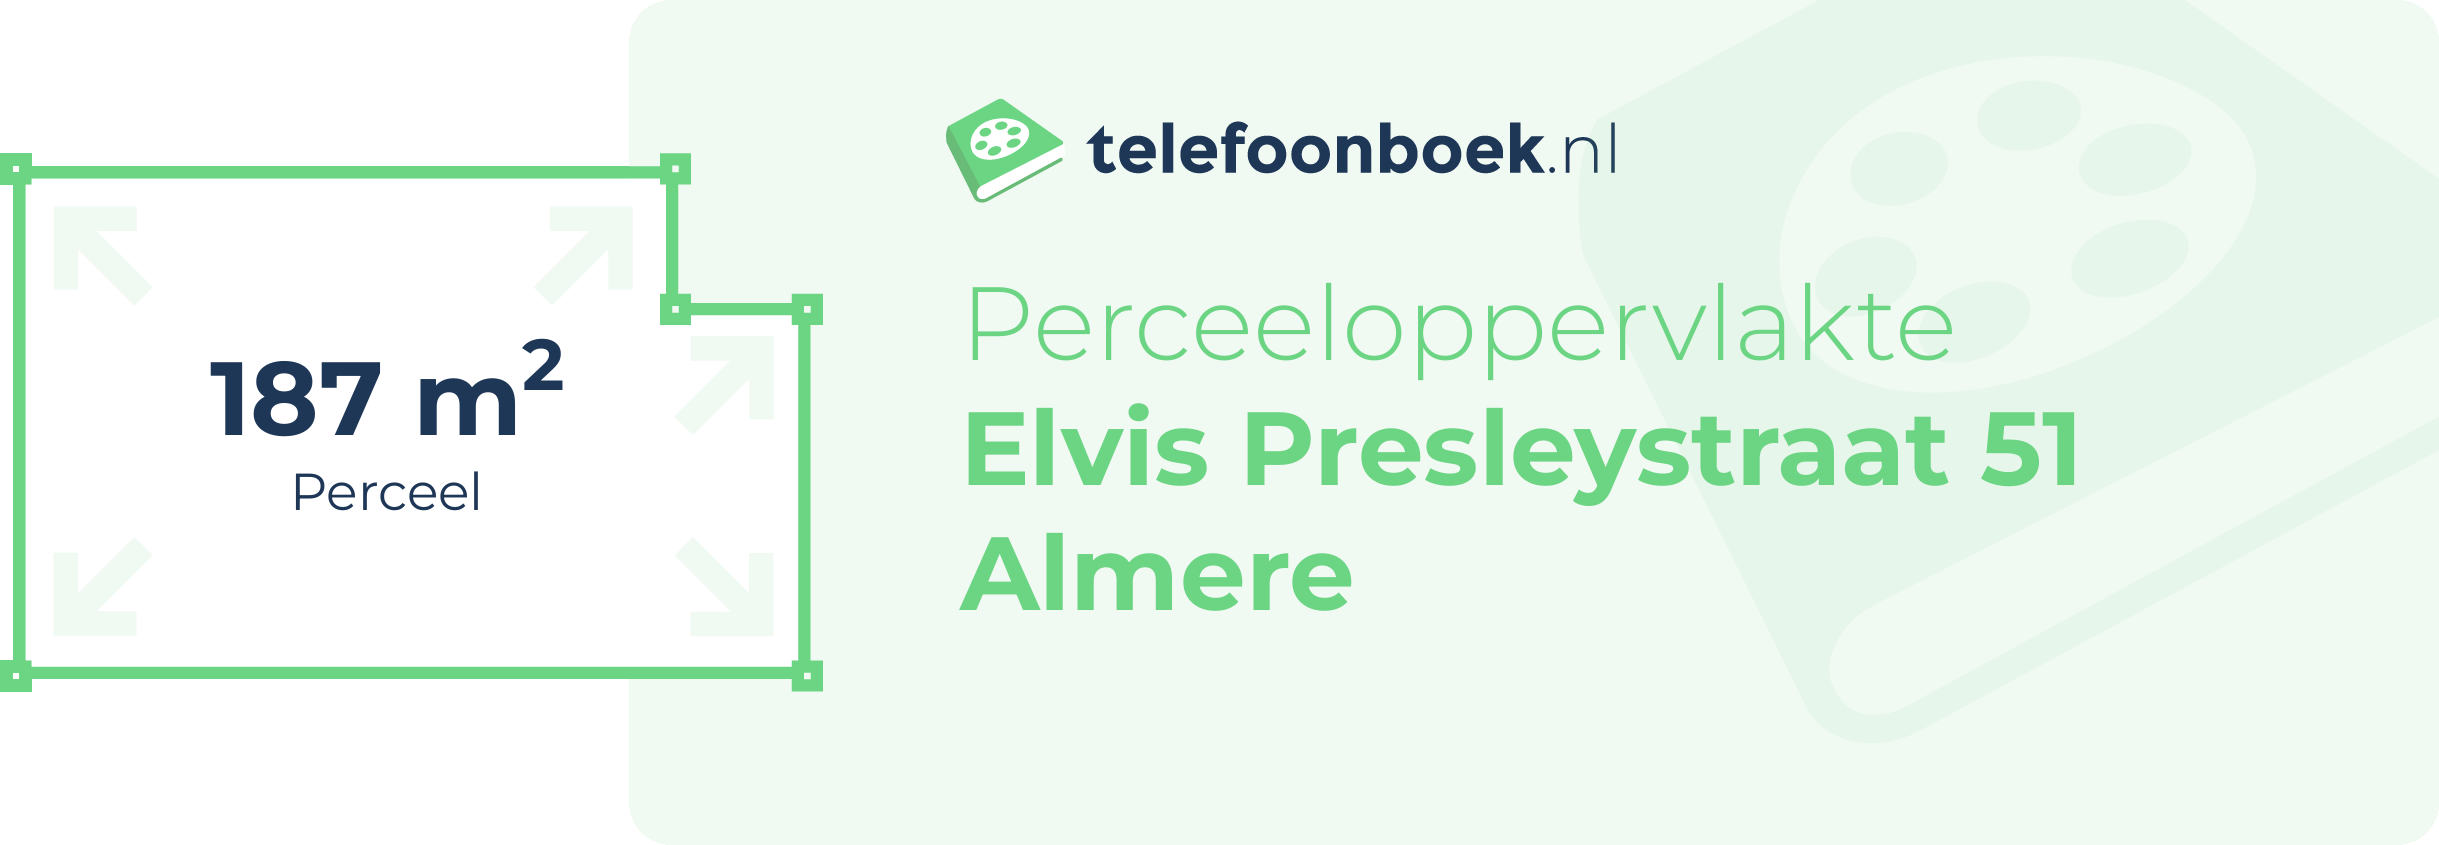 Perceeloppervlakte Elvis Presleystraat 51 Almere